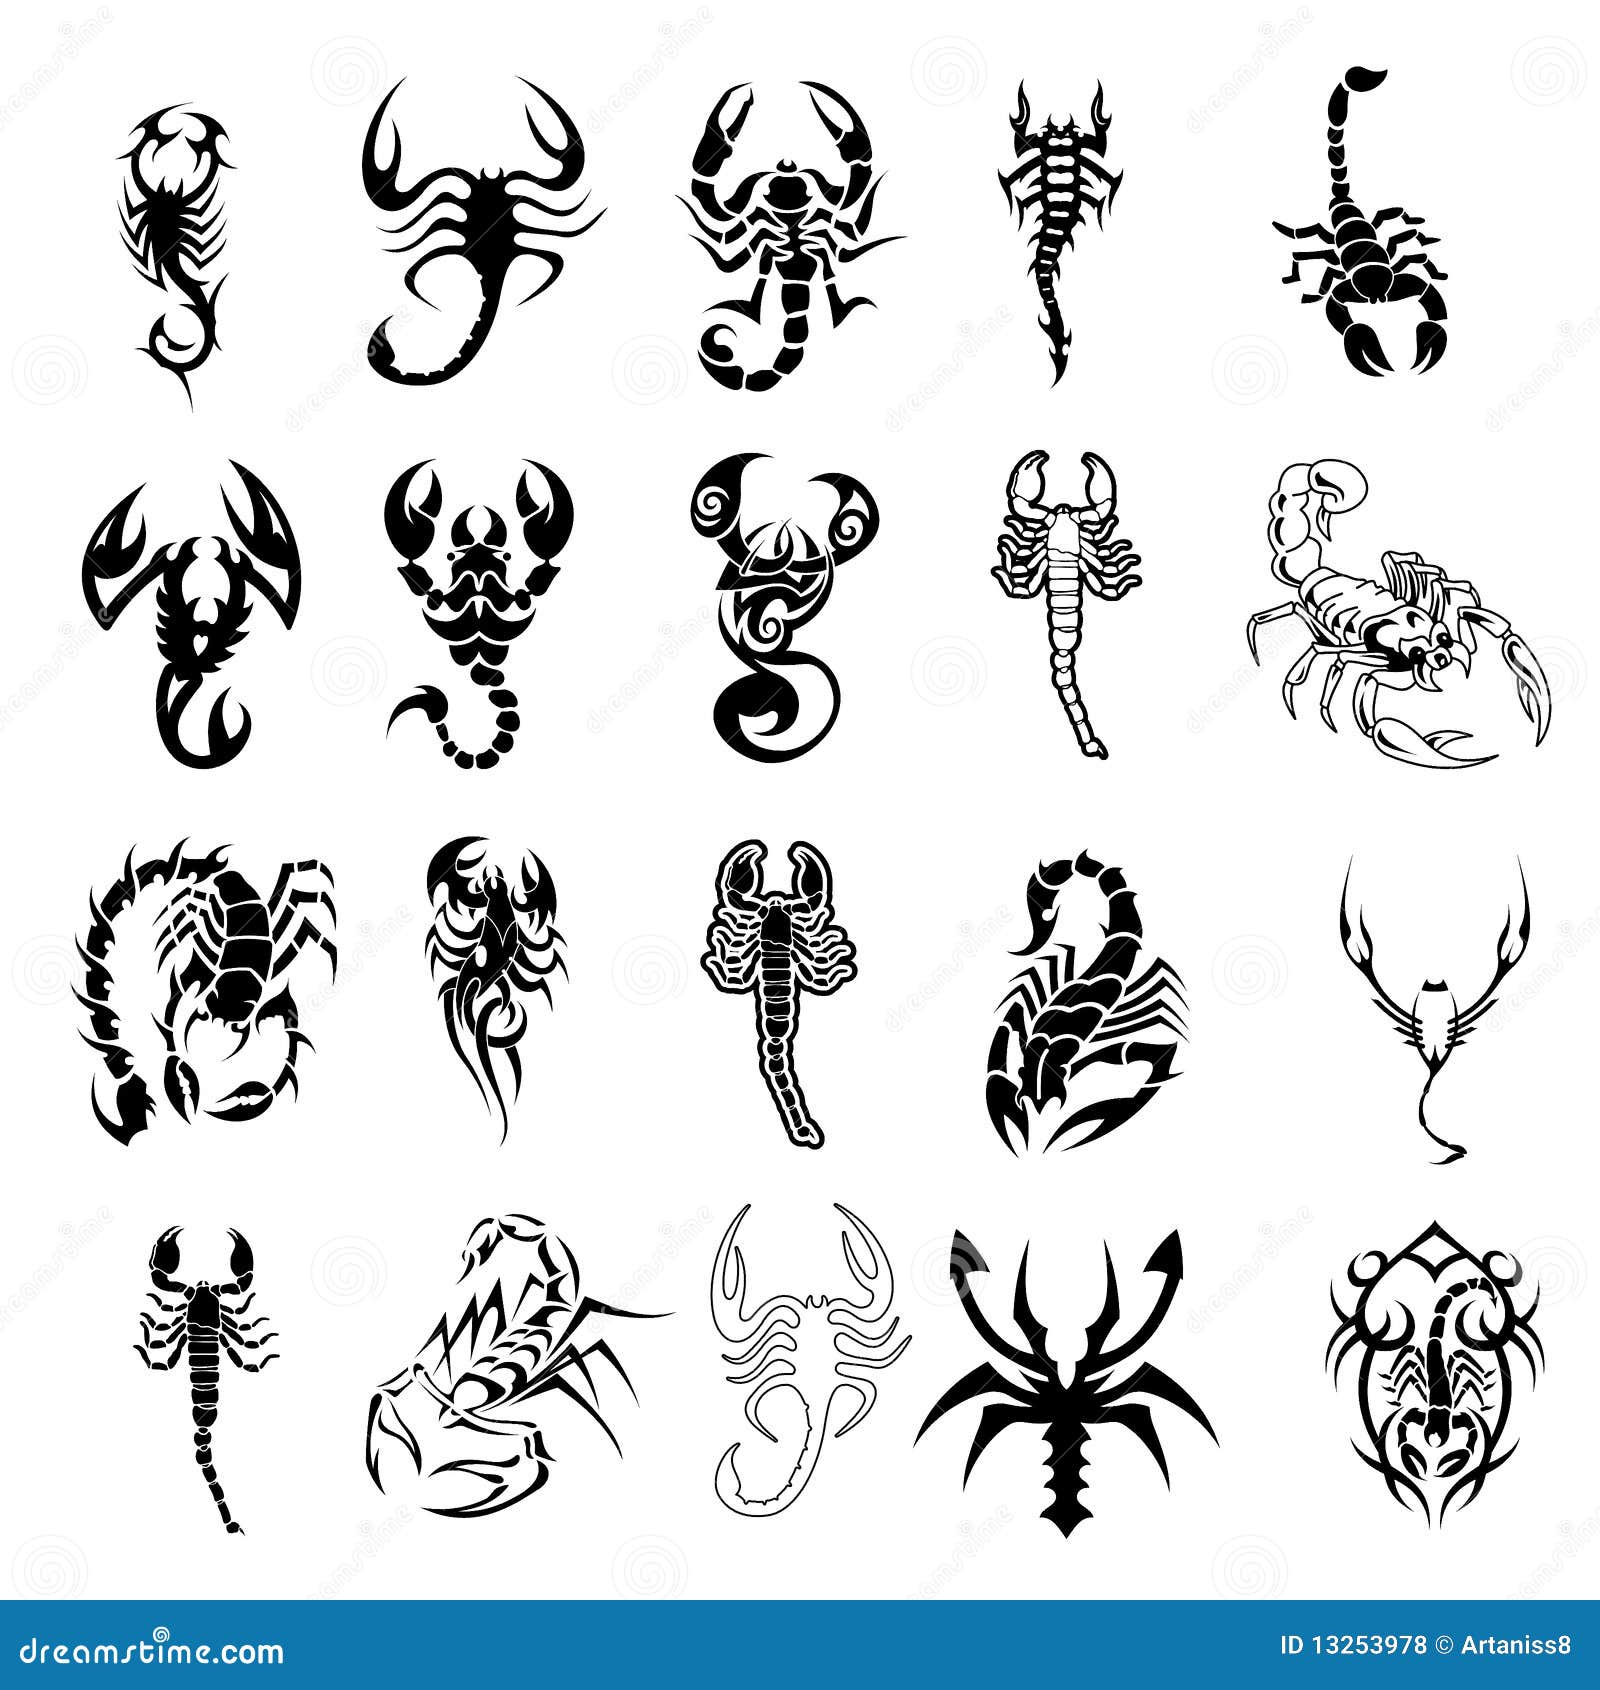 Scorpion Sketch Images  Free Download on Freepik